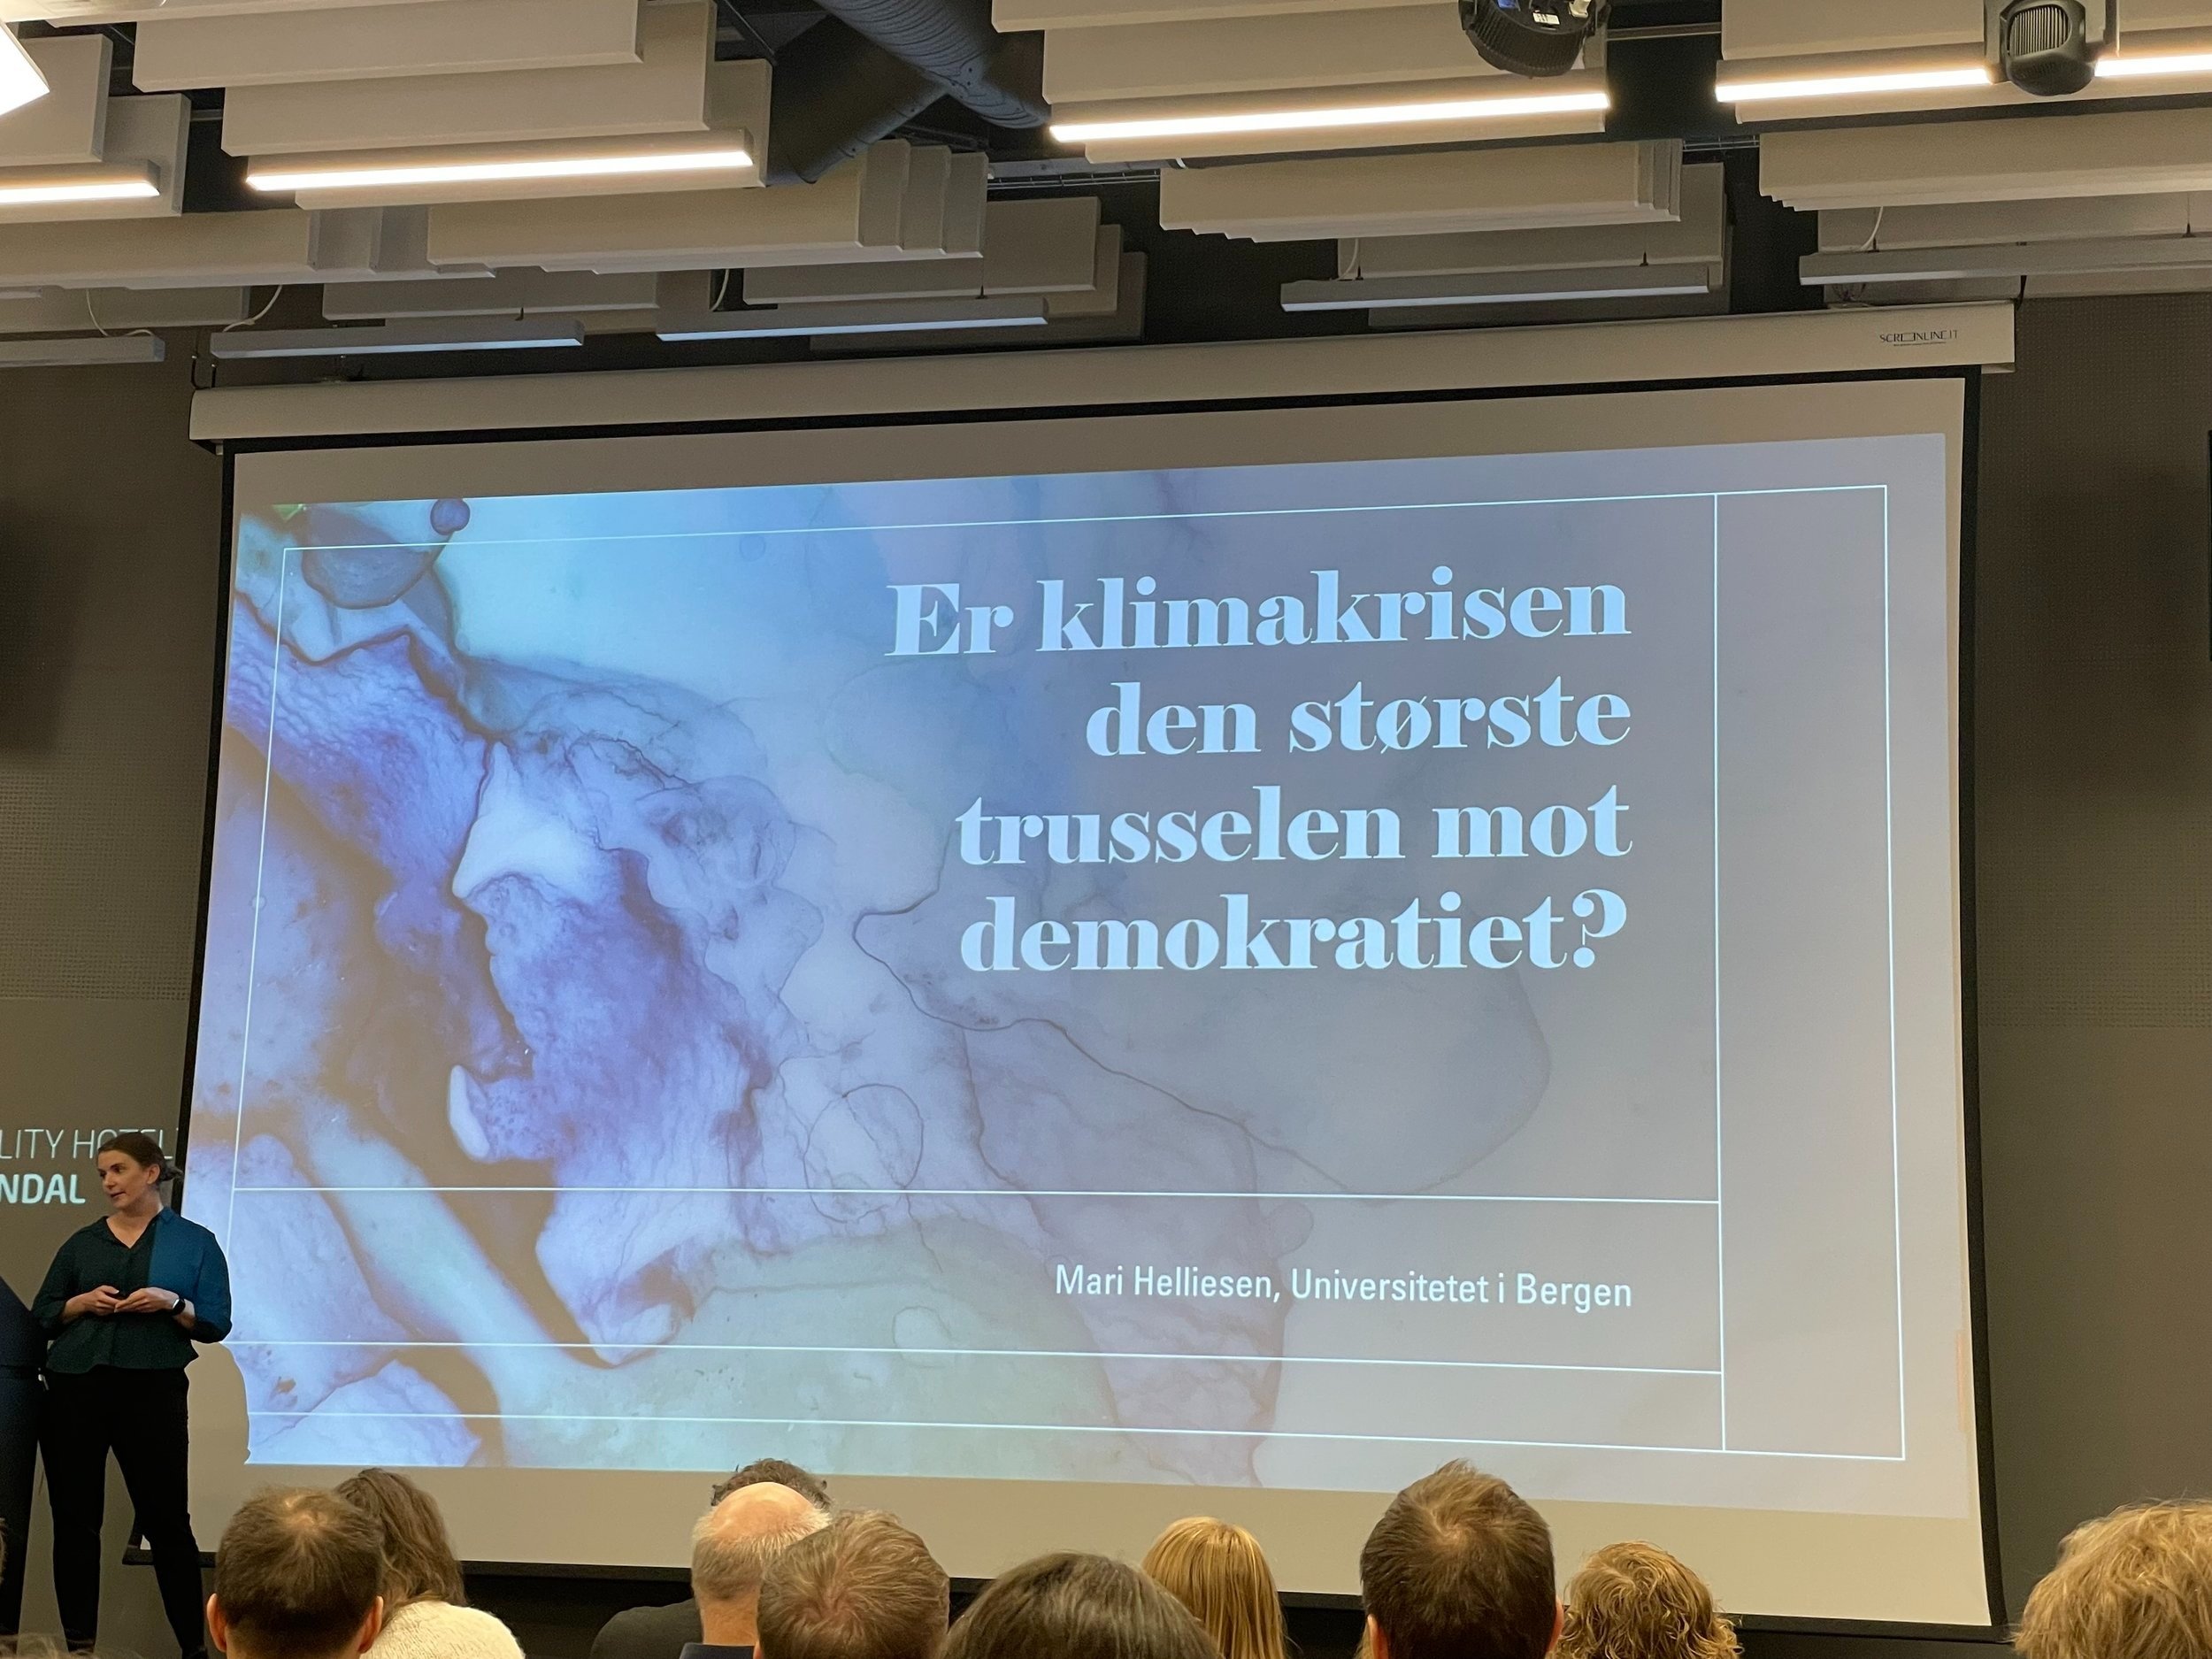  Mari Helliesen frå Institutt for sammenliknende politikk ved Universitetet i Bergen tok for seg korleis demokratiet vårt fangar opp folk sitt syn på kva vi br gjere med klimaendringane.  (foto: Idun A. Husabø) 